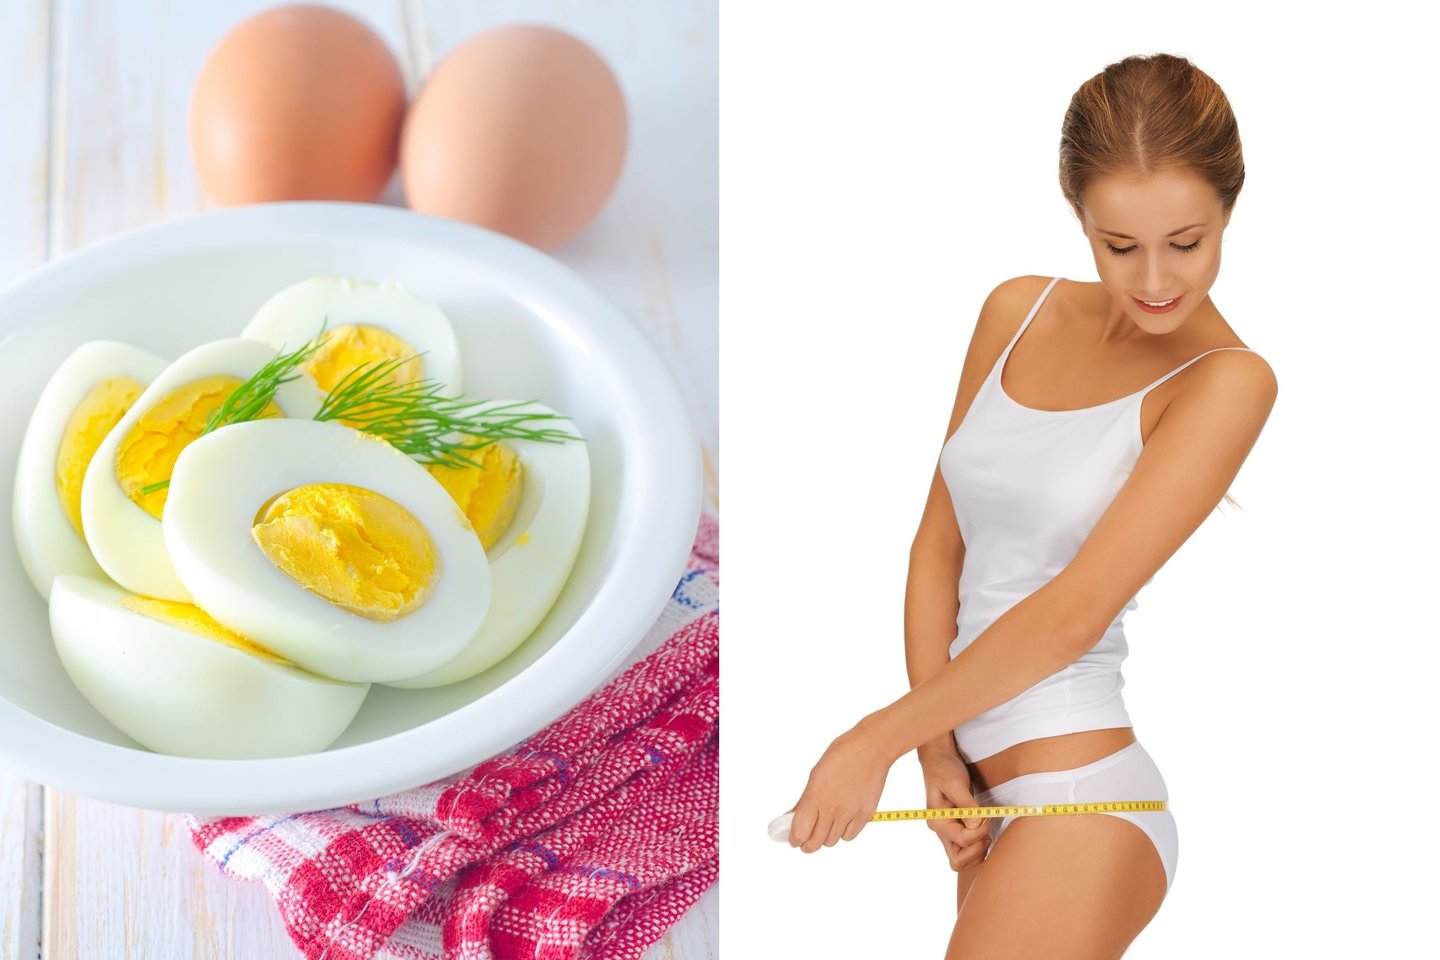 Virti kiaušiniai suteikia sotumo jausmą, yra nekaloringi, todėl ypač aktualūs siekiantiems sulieknėti. <br> 123rf nuotr.